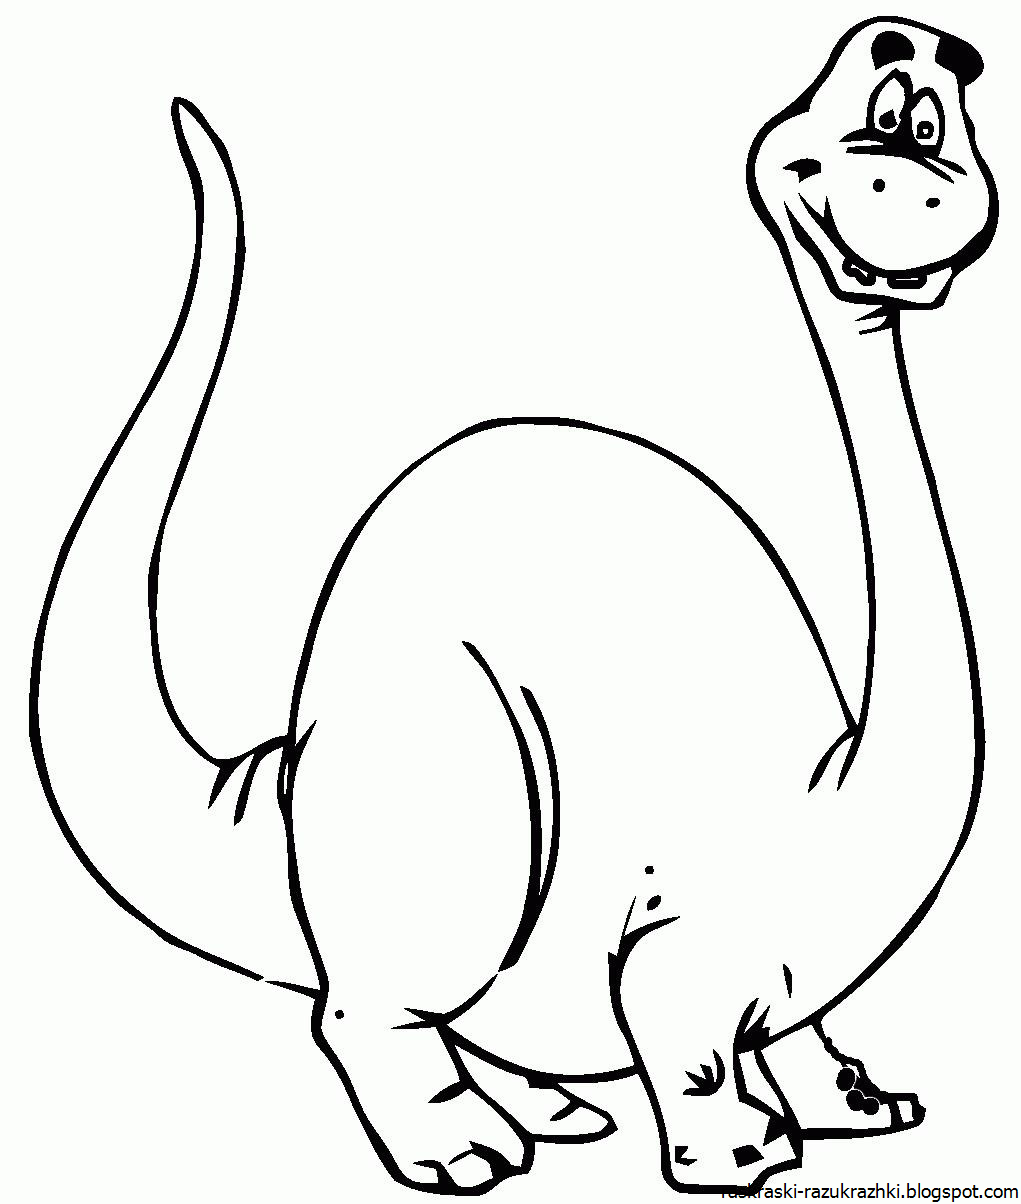 Раскраски динозавры а4. Динозавры / раскраска. Динозавр раскраска для детей. Раскраска "Динозаврики". Динозавры картинки раскраски.